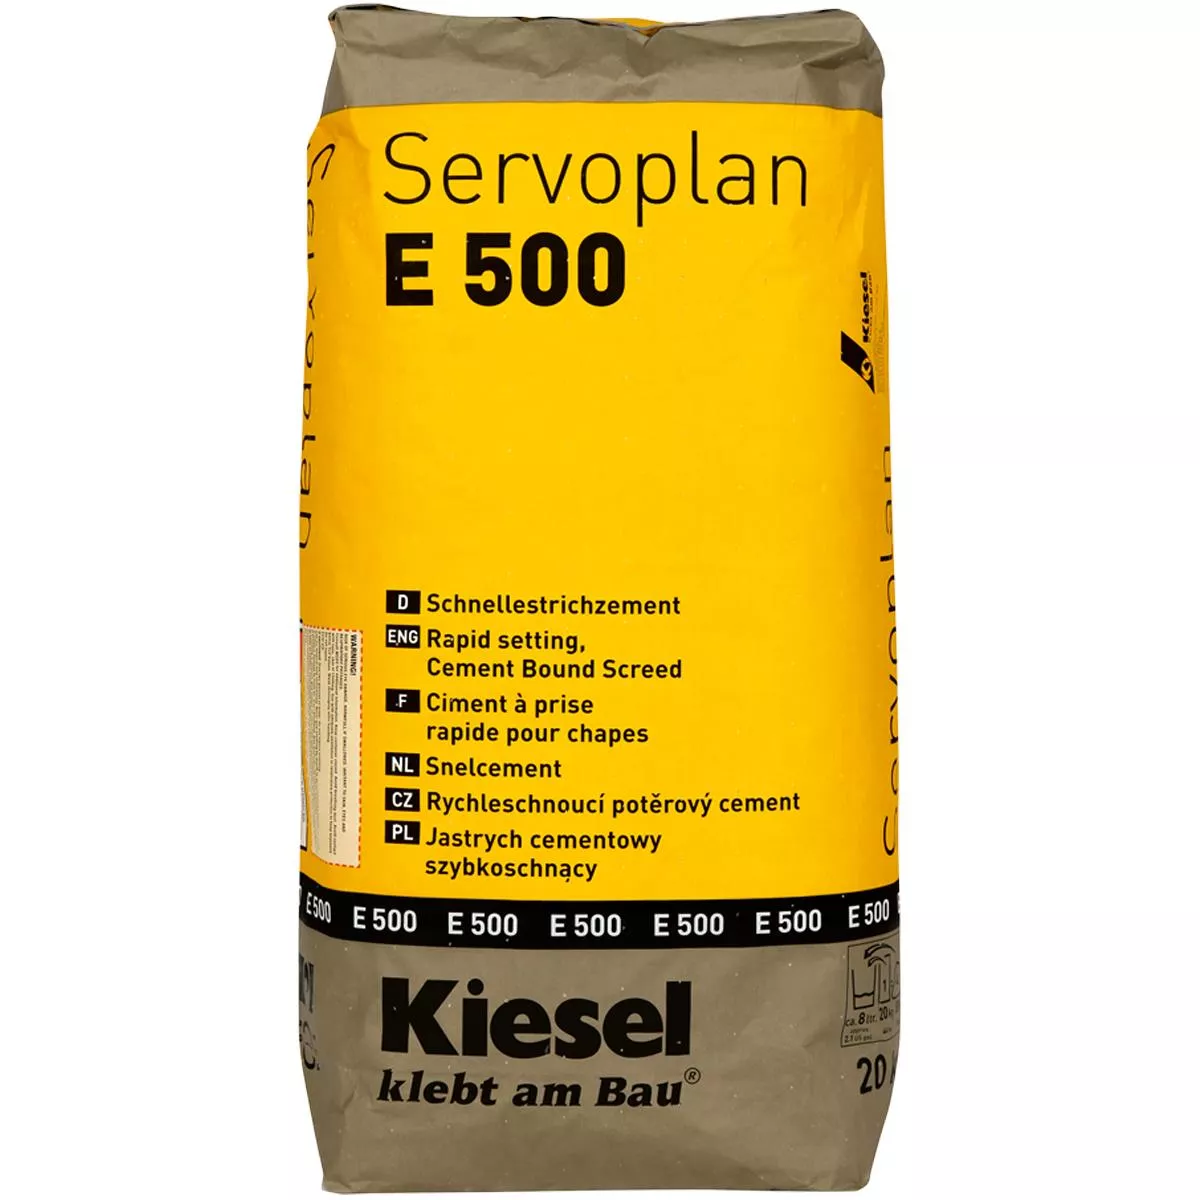 Bindemittel für Schnellestriche Kiesel Servoplan E 500 20 Kg